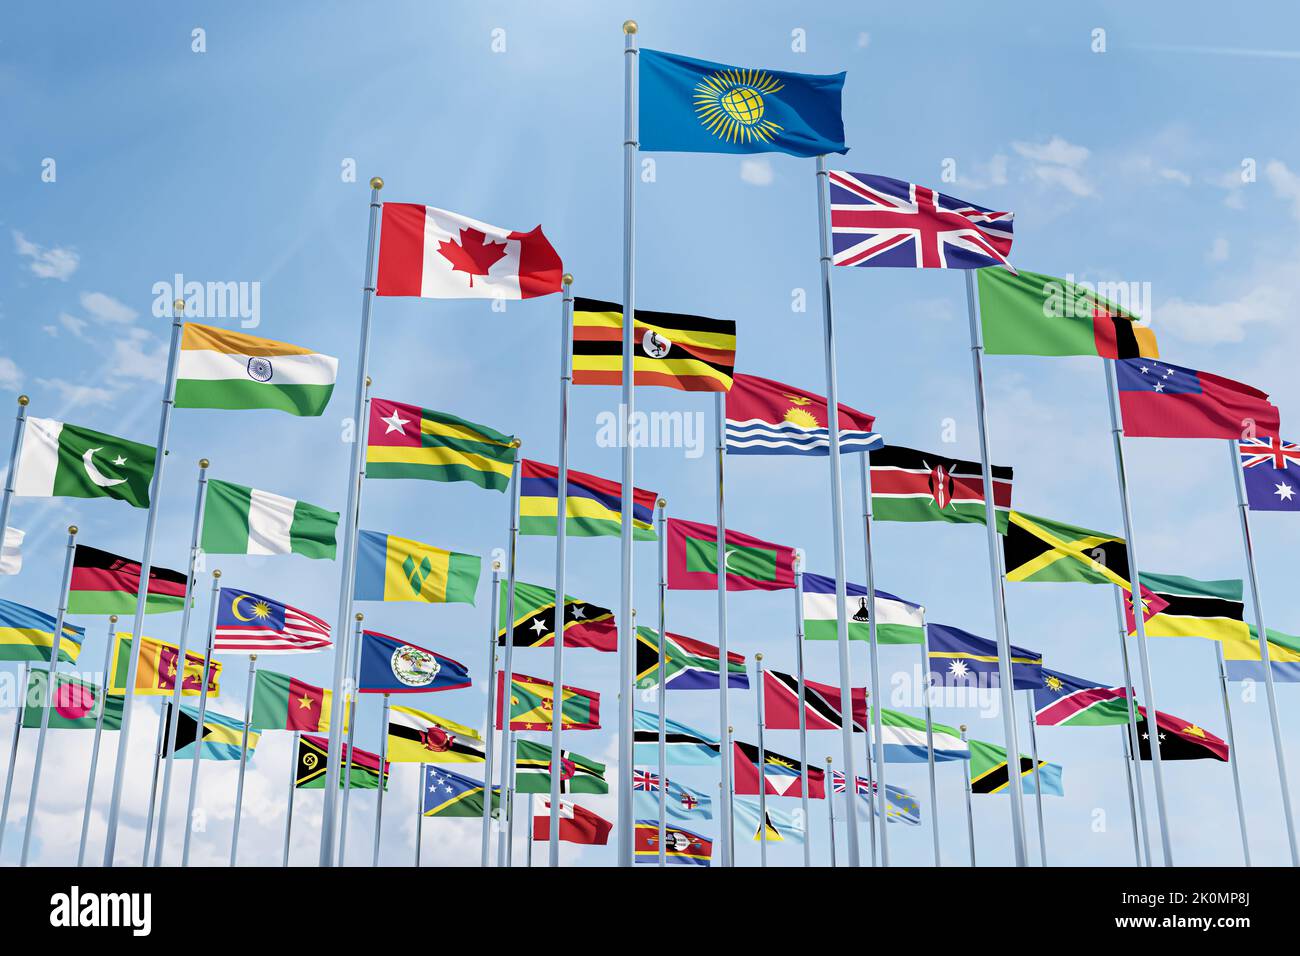 La bandera de la Mancomunidad de Naciones con las banderas de los países de la organización junto con la bandera de Gran Bretaña Foto de stock